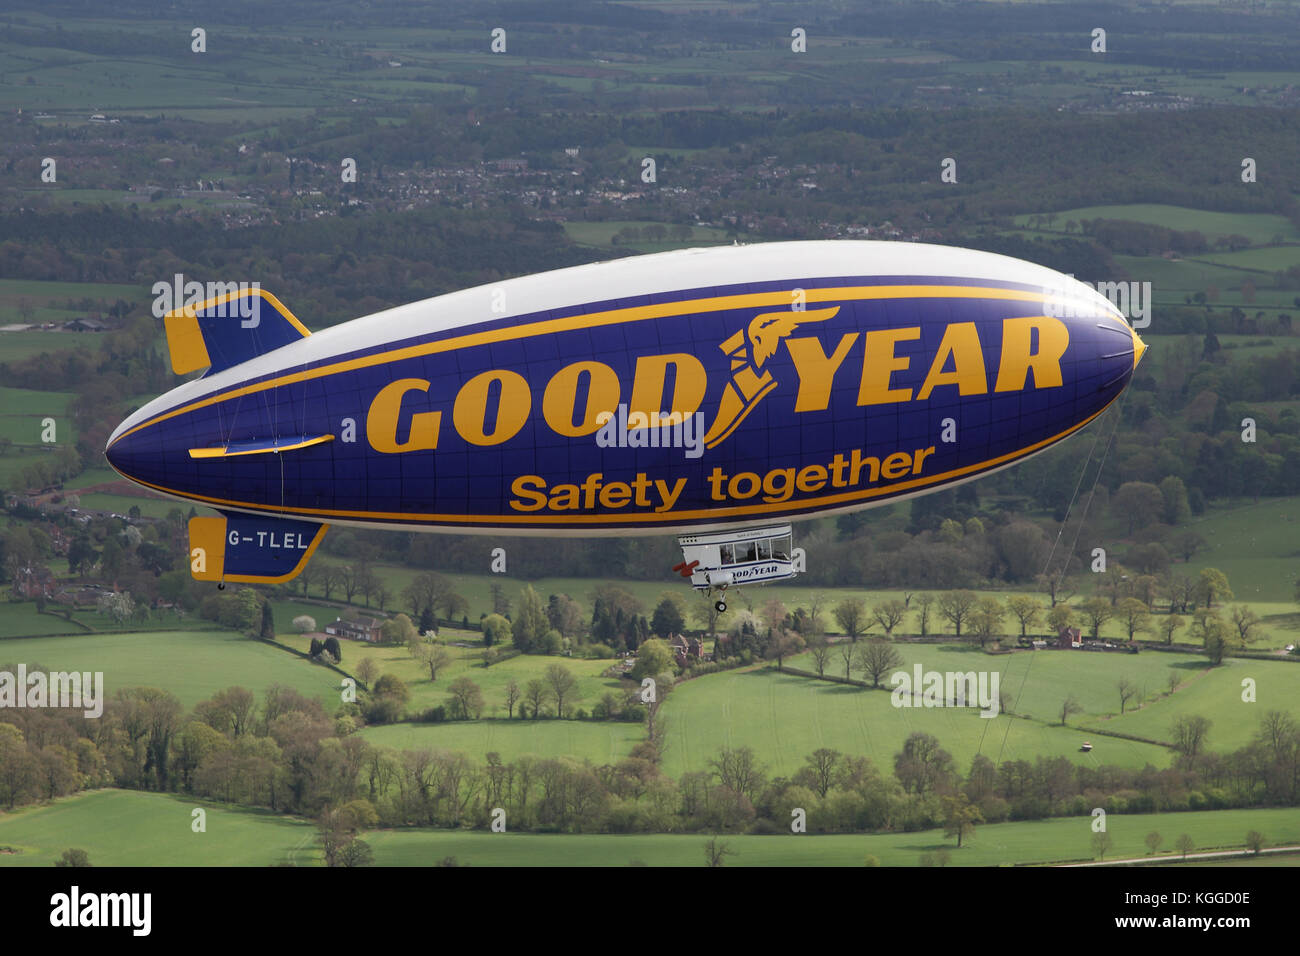 Aire a aire en el vuelo Goodyear dirigible blimp / airship G-TLEL Espíritu de Seguridad aerotransportado volando sobre el campo de Shropshire desde Halfpenny Green. Foto de stock